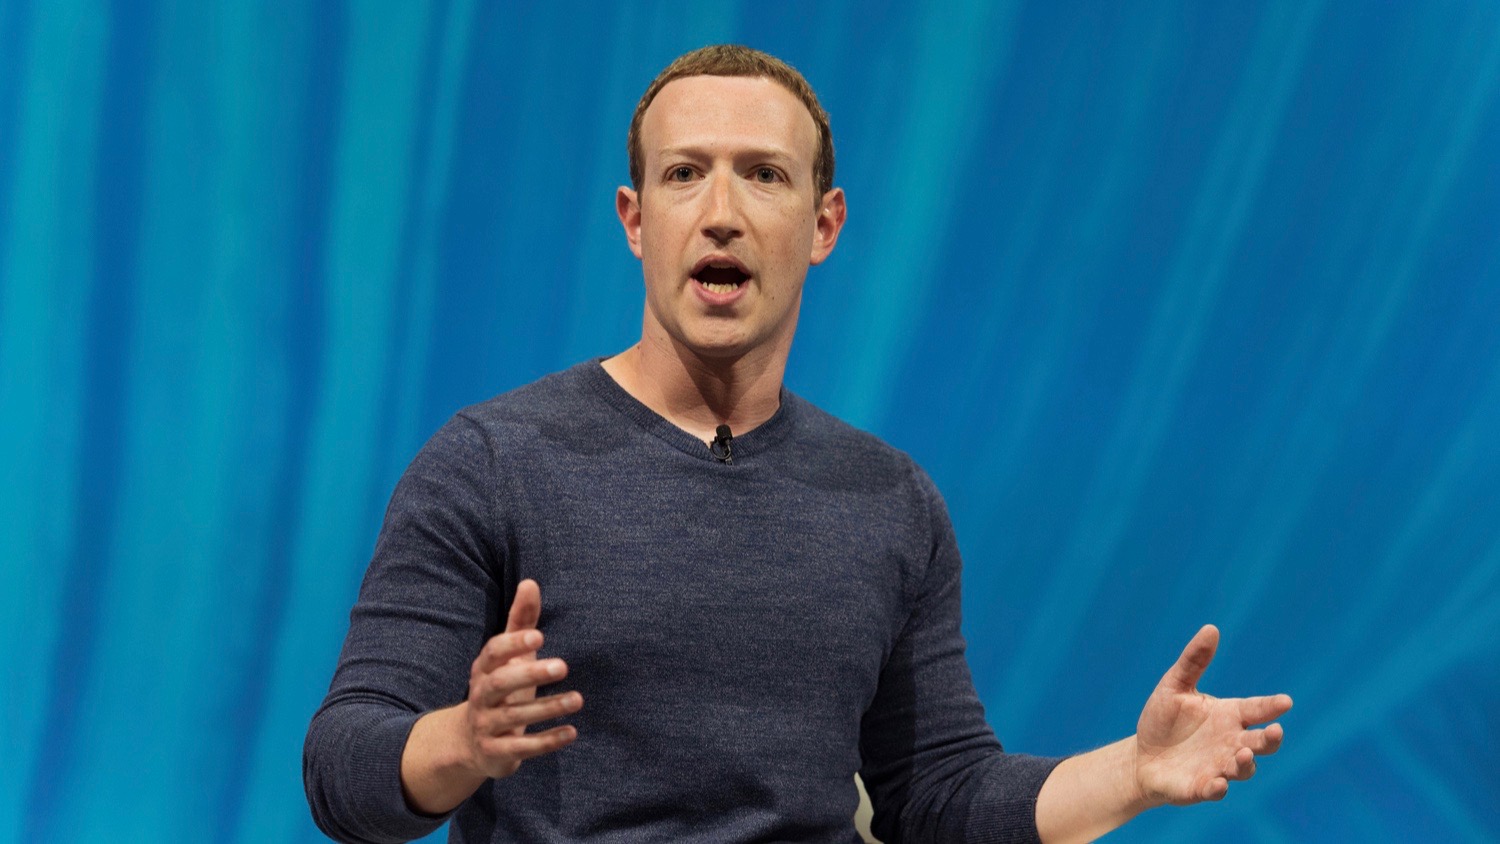 Facebook CEO Mark Zuckerberg To Testify Before Congress Over Libra Crypto